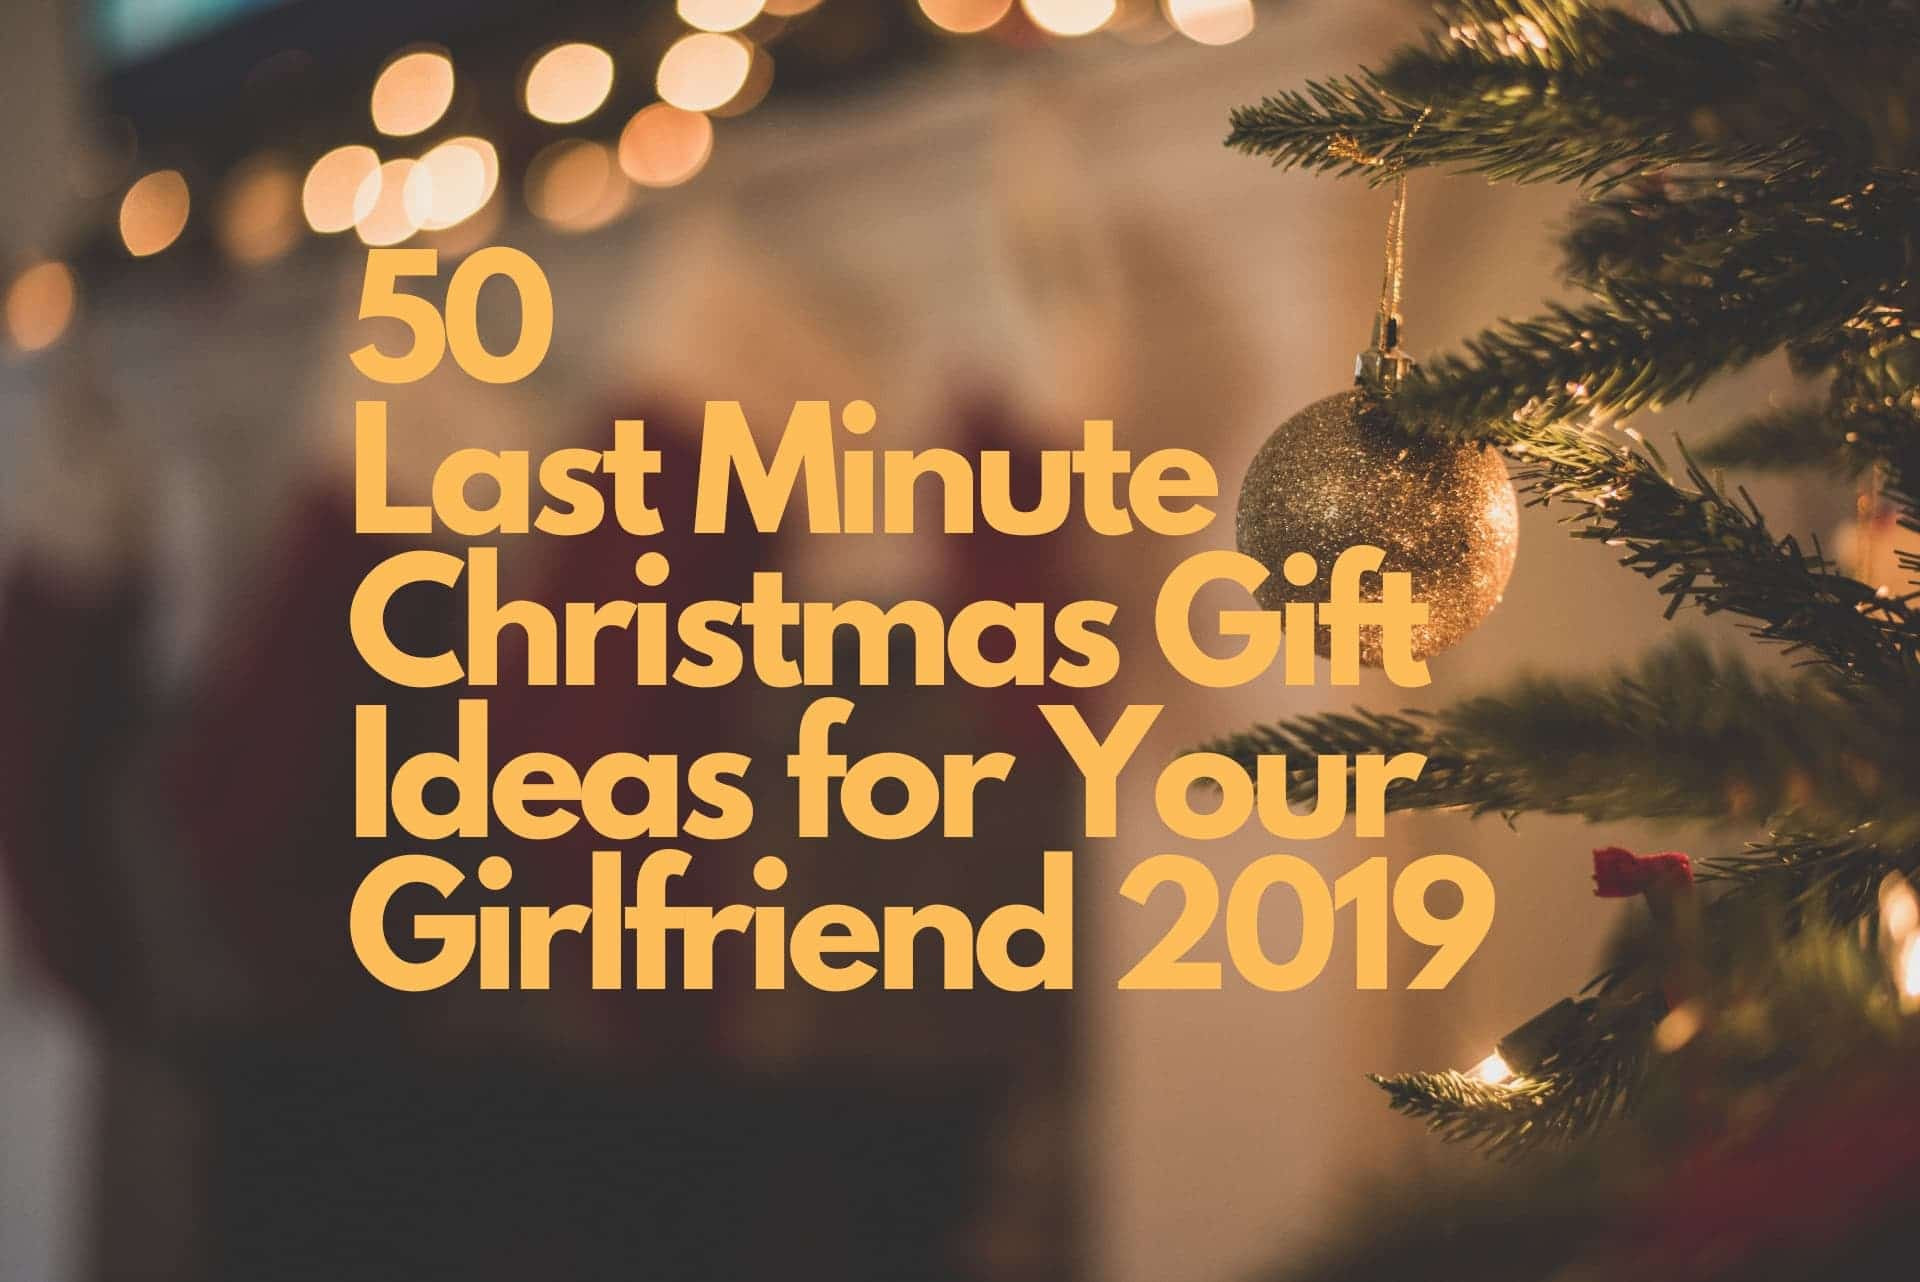 Last Minute Gift Ideas For Girlfriend
 50 Last Minute Christmas Gift Ideas for Your Girlfriend